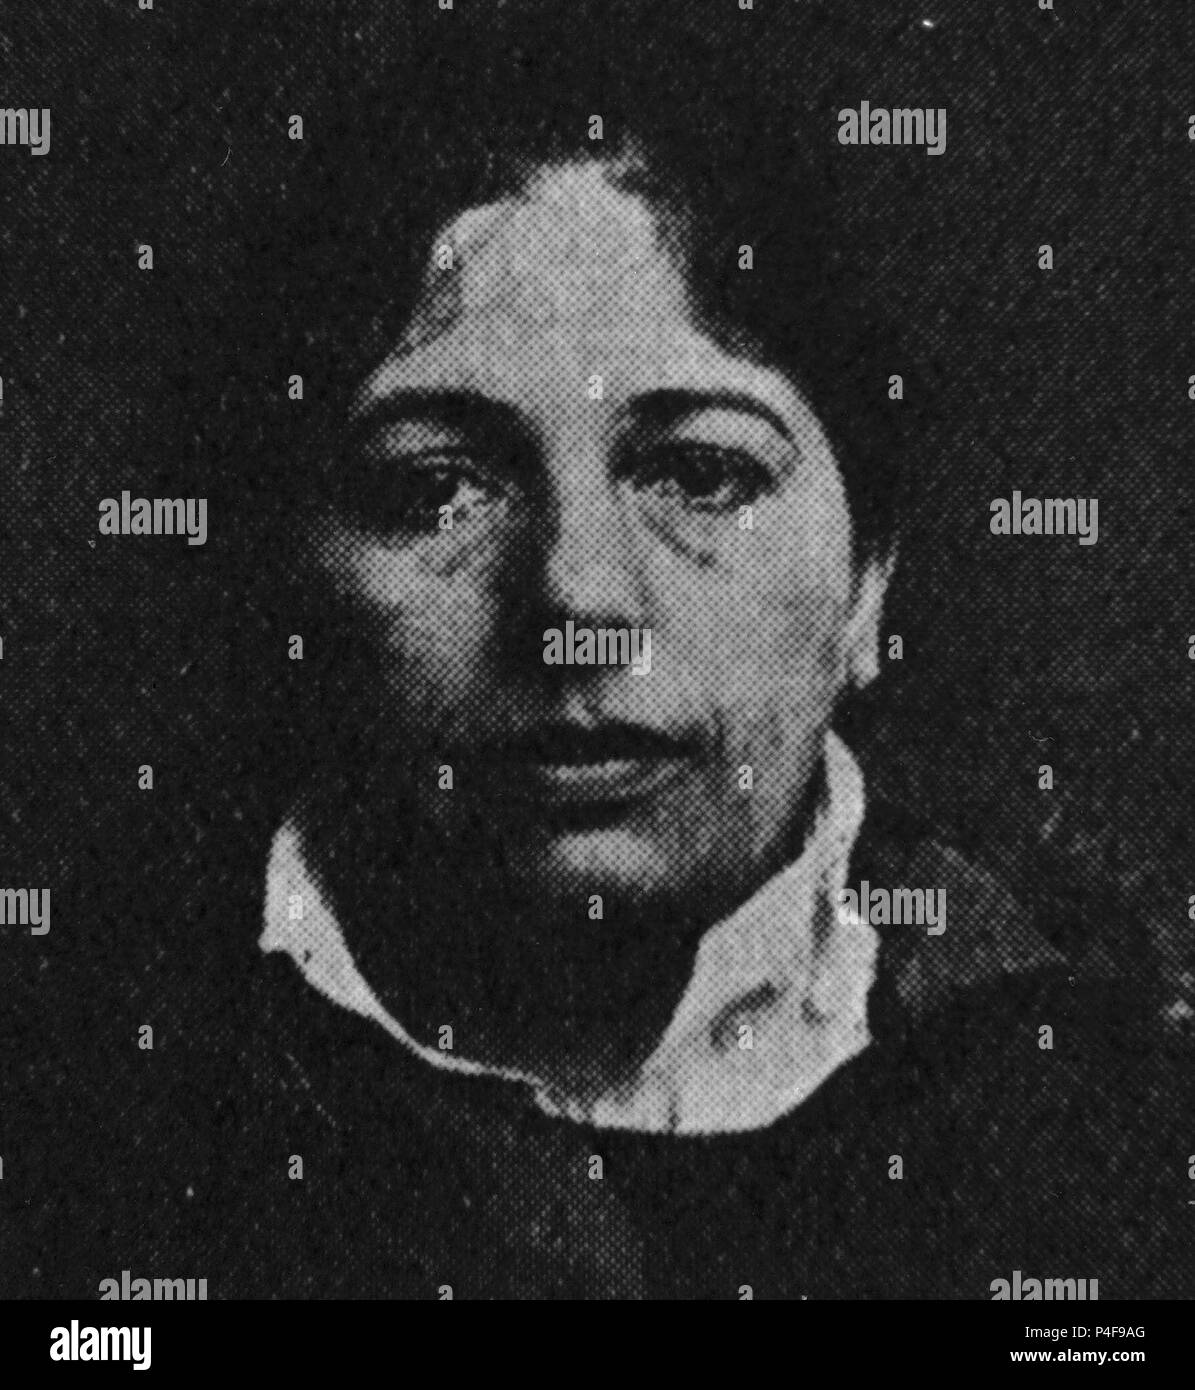 MATA HARI- MARGARETHA GEERTRUIDA ZELLE 1876/1917- BAILARINA/ESPIA HOLANDESA- POCO ANTES DE SU MUERTE. Stock Photo